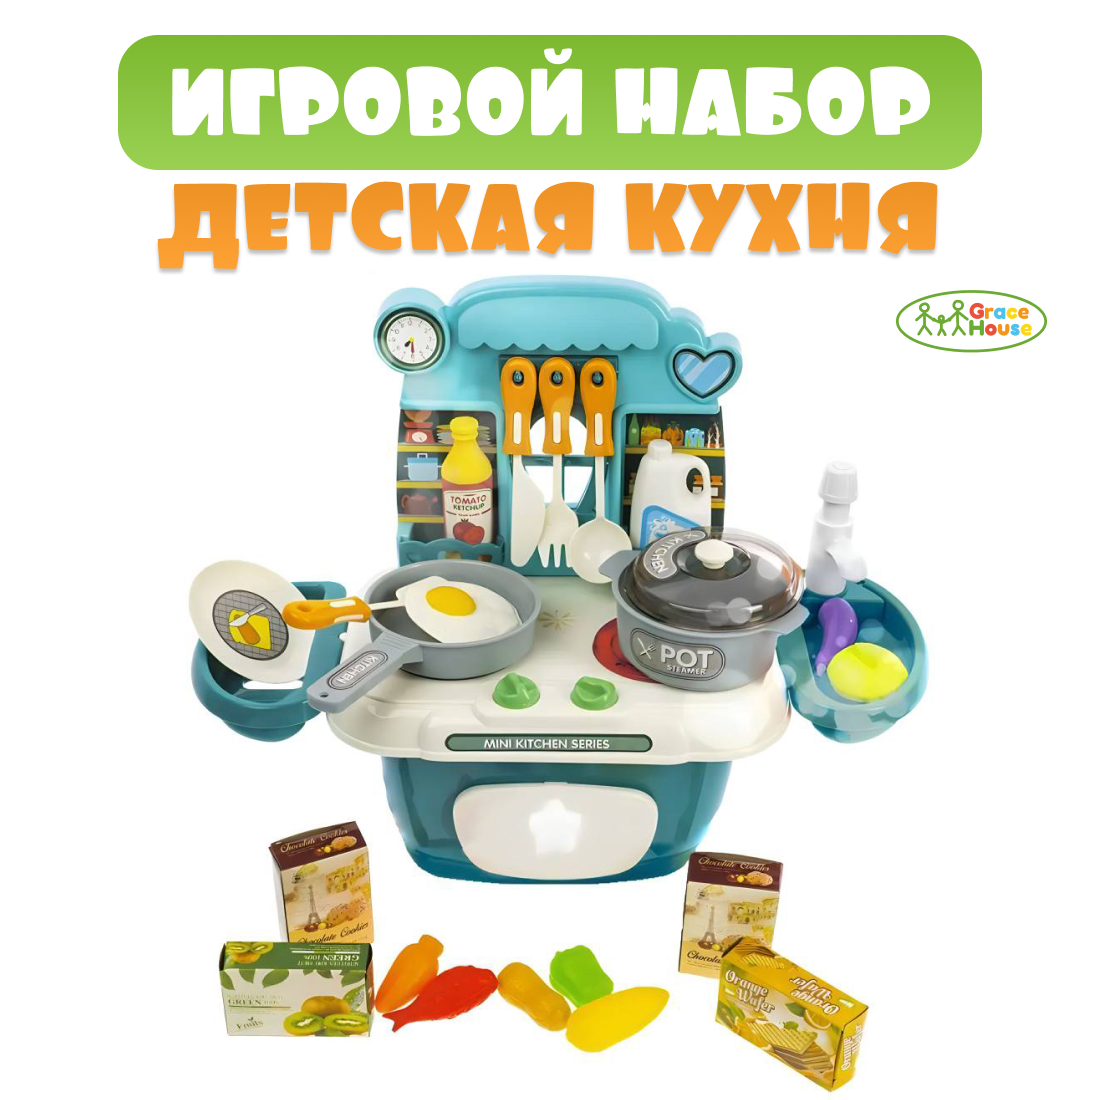 Игровой набор детская кухня с паром, кран с водой, продукты GRACE HOUSE зеленый